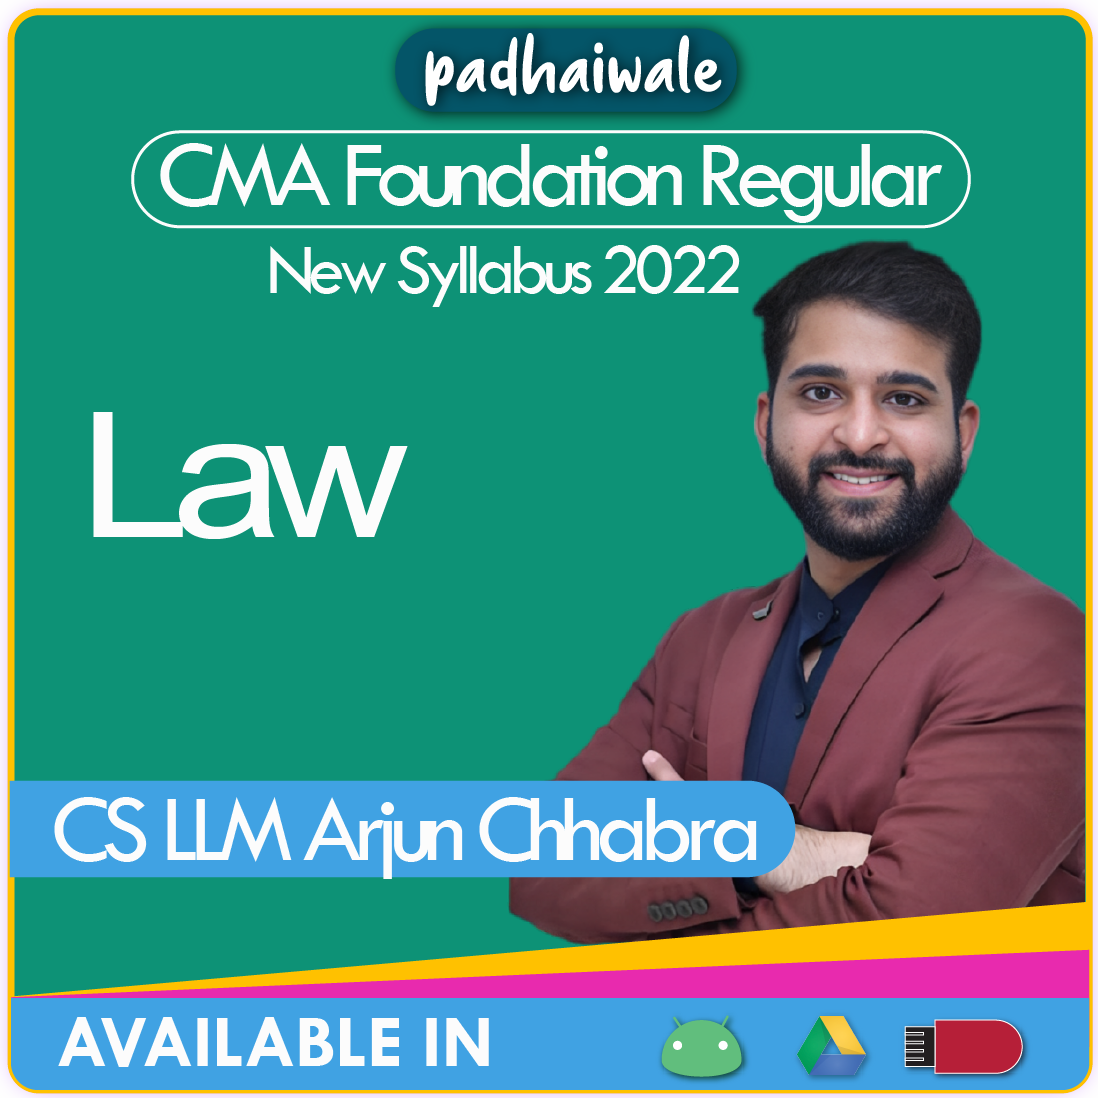 CMA Foundation Law Arjun Chhabra